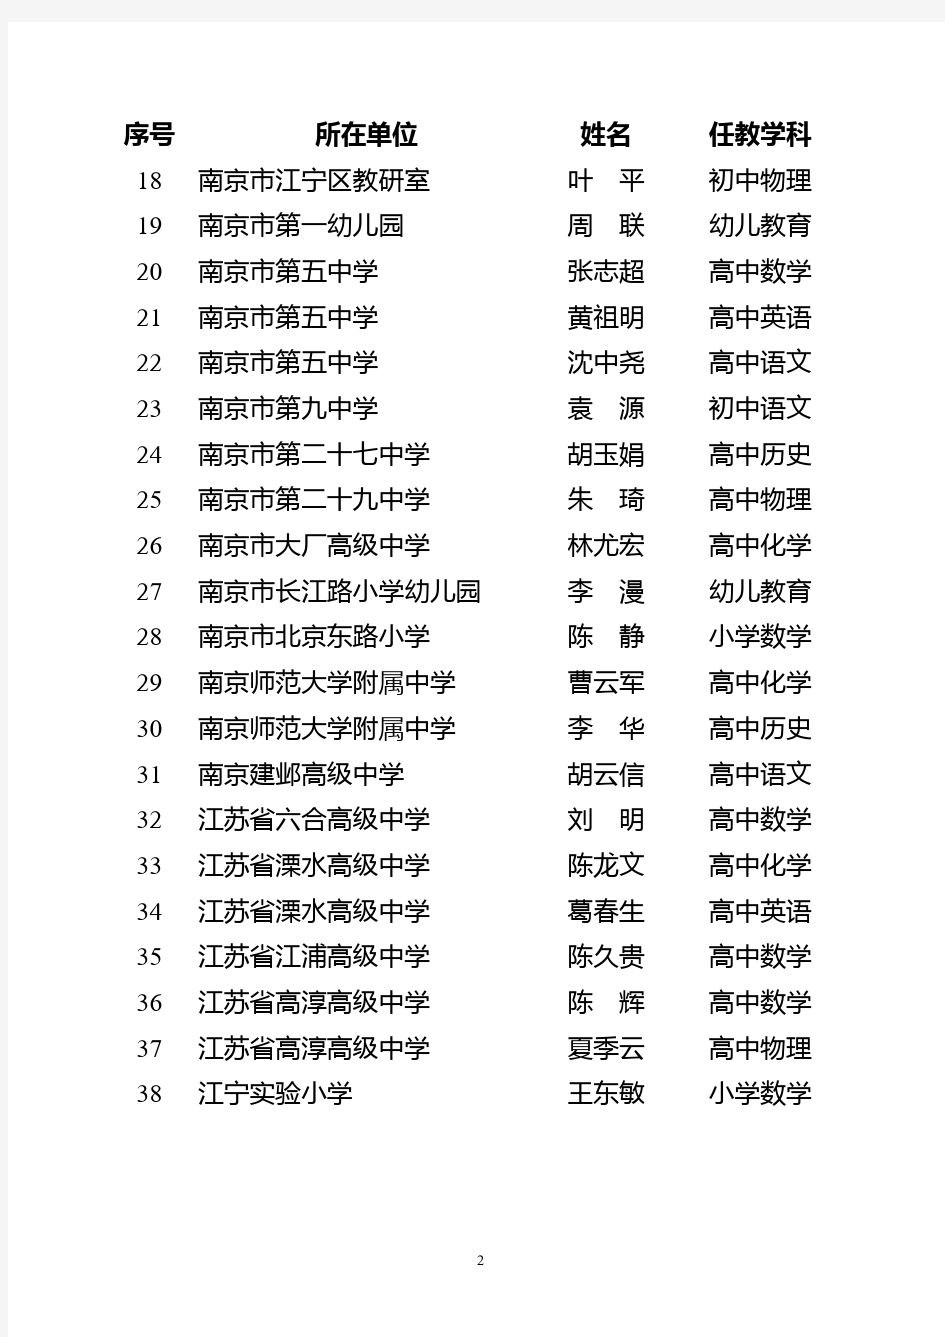 江苏省第十批特级教师名单